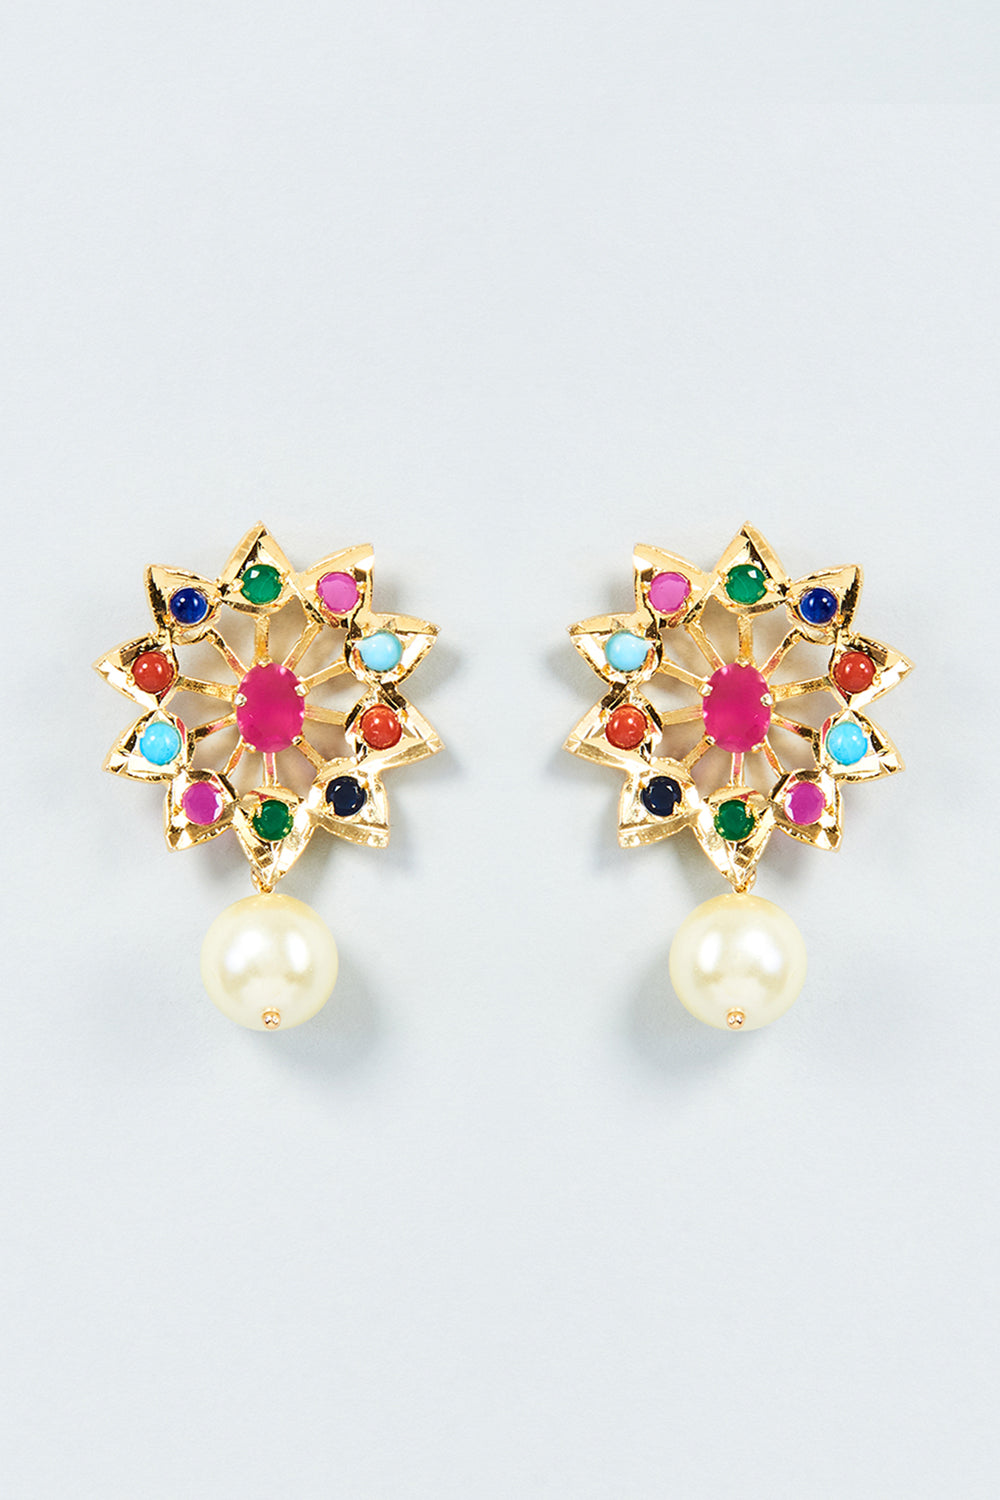 22kt 22k Gold Stud Tops Women Earrings Daughter Earrings Handmade Earrings  for Gift - Etsy